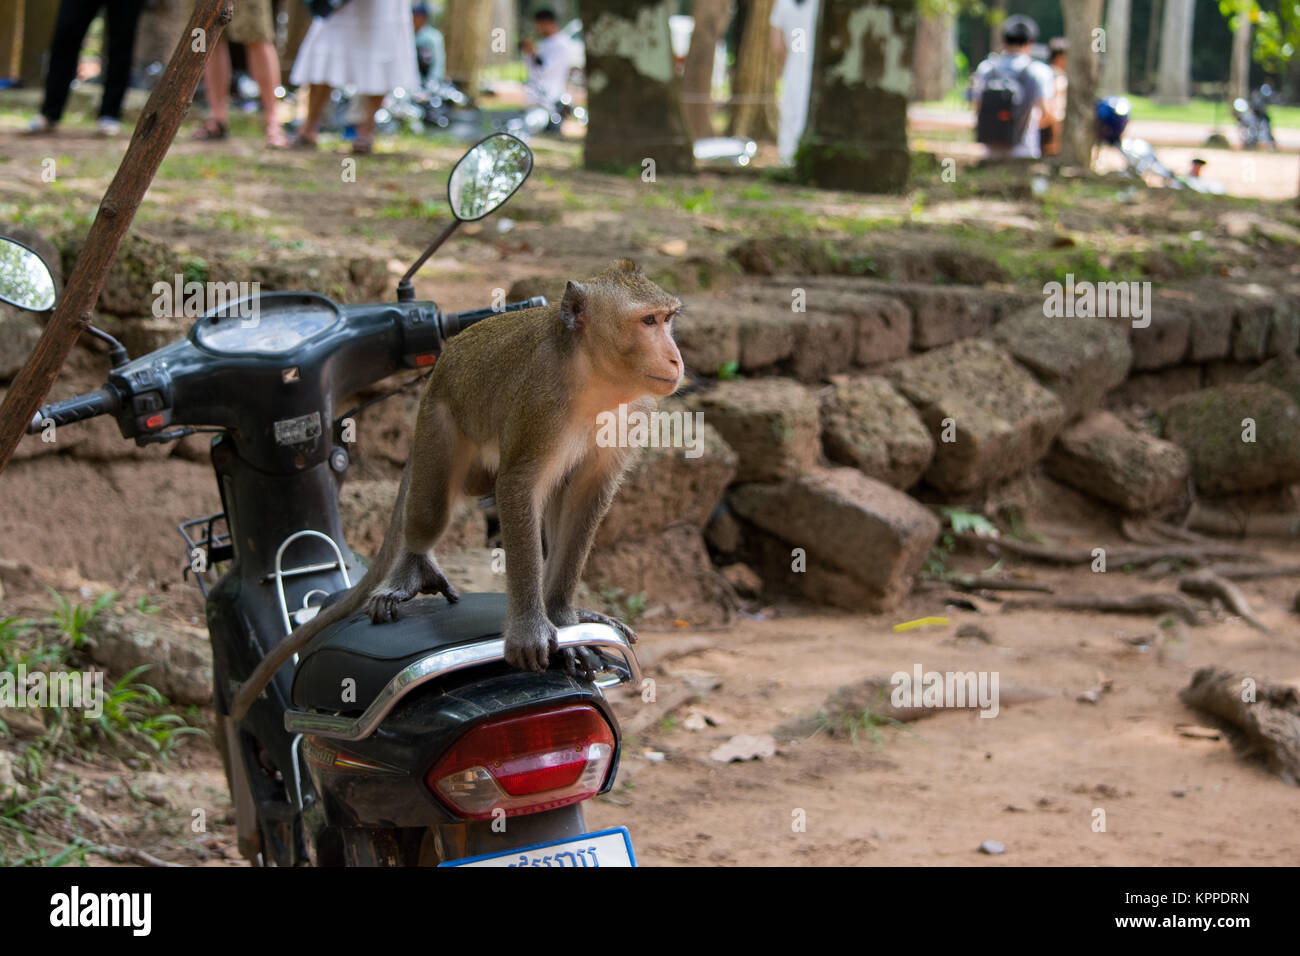 Un singe macaque adultes, assis sur un siège de vélo à moteur, dans le mauvais sens. Moto garée avec un visiteur surprise. Le Cambodge, en Asie du sud-est Banque D'Images